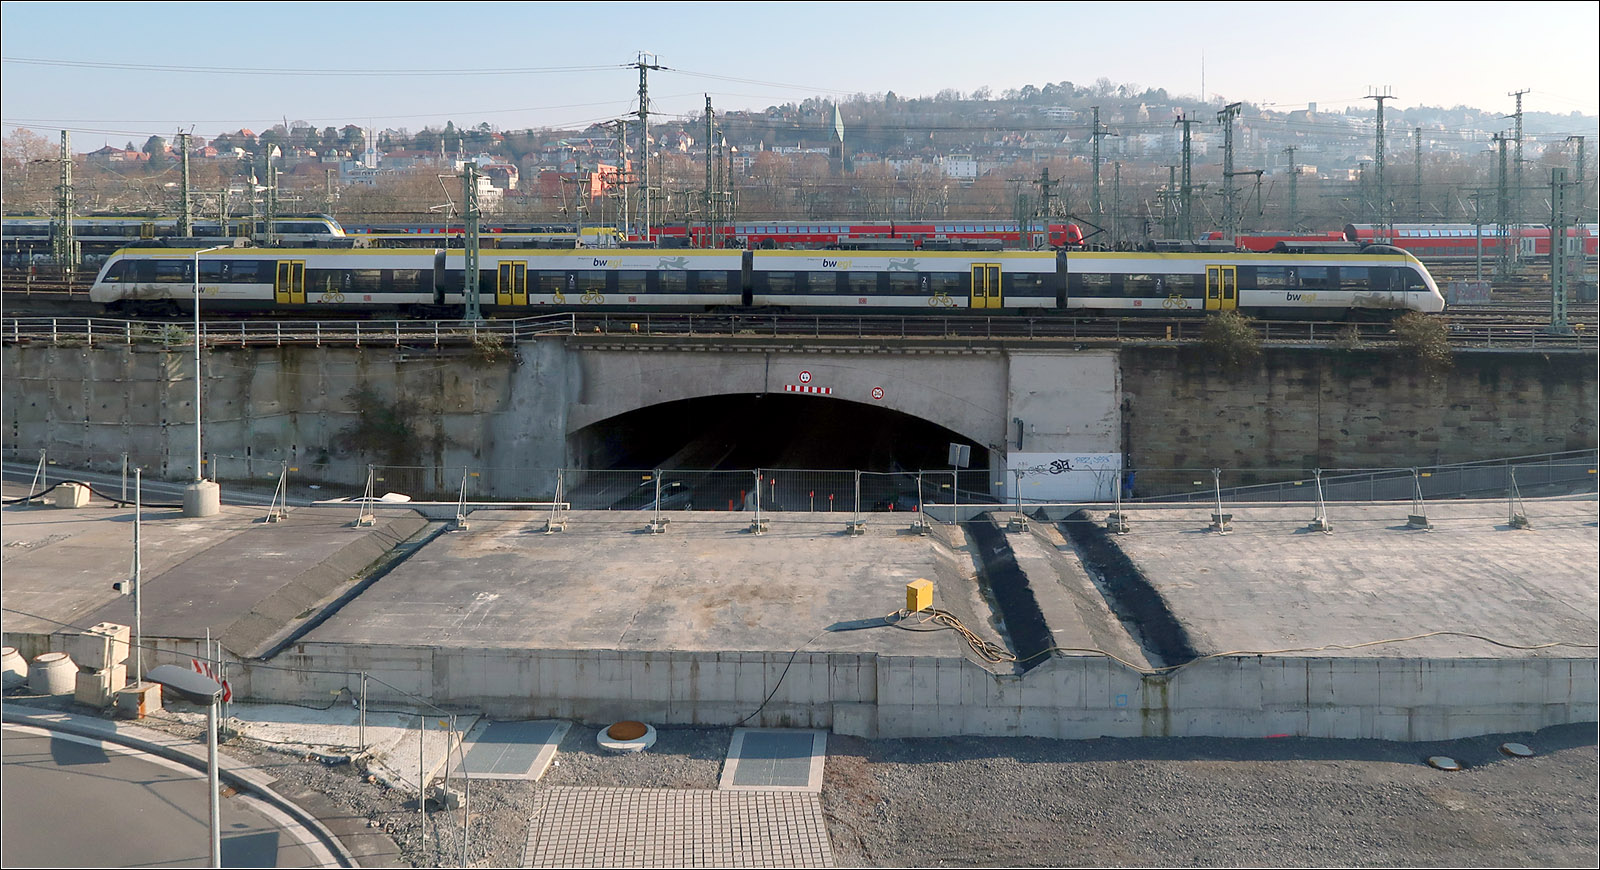 Der S-Bahntunnel blockiert eine Hauptverkehrstraße - 

Der verlängerte S-Bahn-Stammstreckentunnel blockiert die Wolframstraße. Diese unterfährt das Vorfeld des Stuttgarter Hauptbahnhofes und stößt dann auf der Nordwestseite am Ende des Tunnel auf den aus der jetzigen Geländeebene herausragenden rechtwinklig kreuzenden S-Bahntunnel. Da die Straßenfahrbahnen aufgrund der Unterführung zu tief liegen um den Tunnel direkt zu überfahren wurden getrennt für beide Fahrtrichtungen Schlaufen mit Rampen gebaut, die den Tunnel rechts und links überqueren.

09.02.2023 (M)
